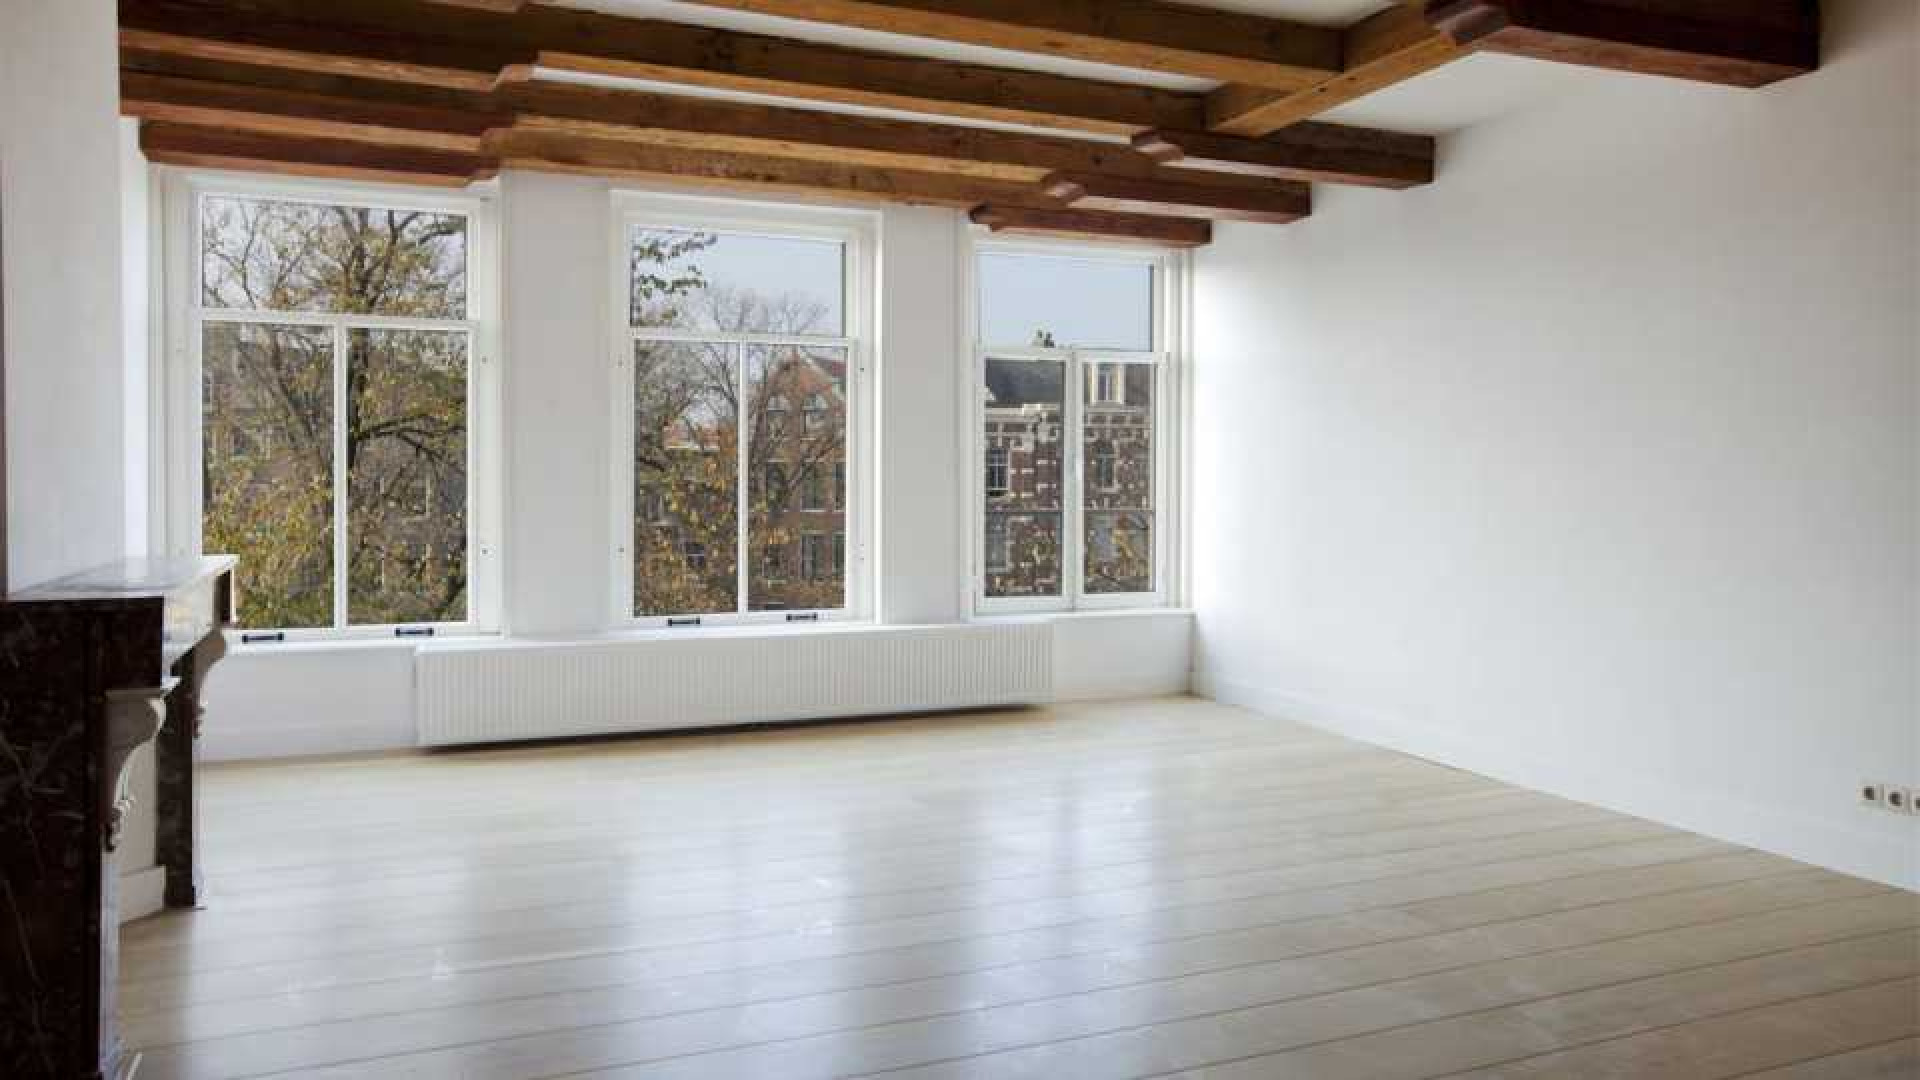 DJ Tiesto verlaagt huur van zijn luxe dubbele bovenhuis in Amsterdam. 4